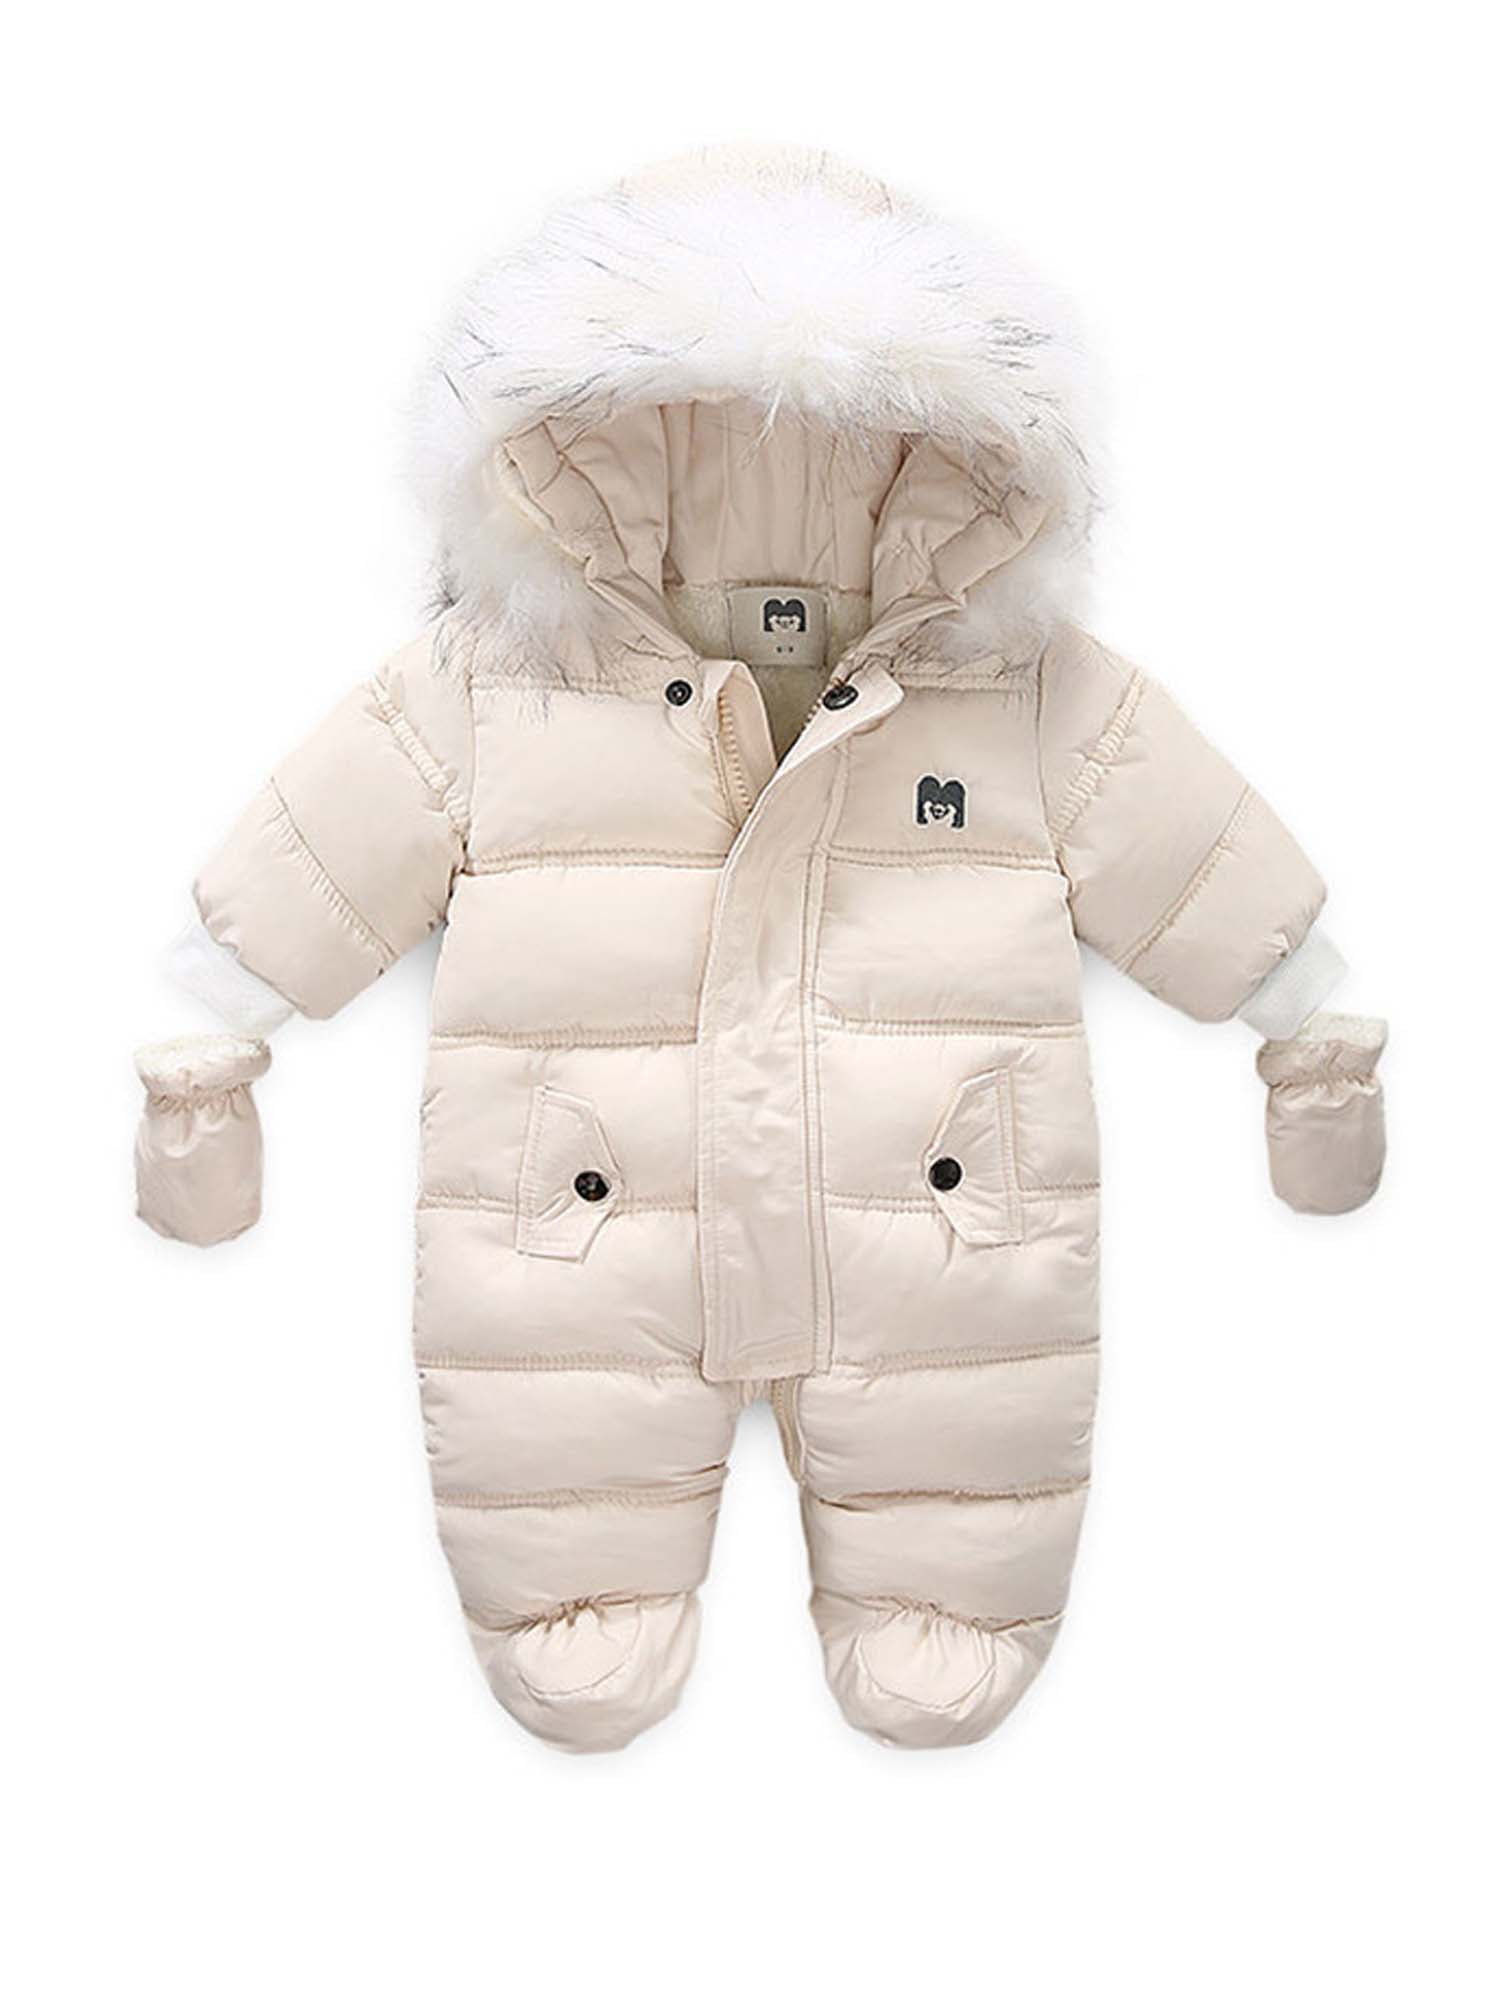 Unisex Babies Girls Boys Winter Snowsuit Warm Fleece Hooded Cartoon Jumpsuit Romper Jacket Bodysuit 0-3 Y 